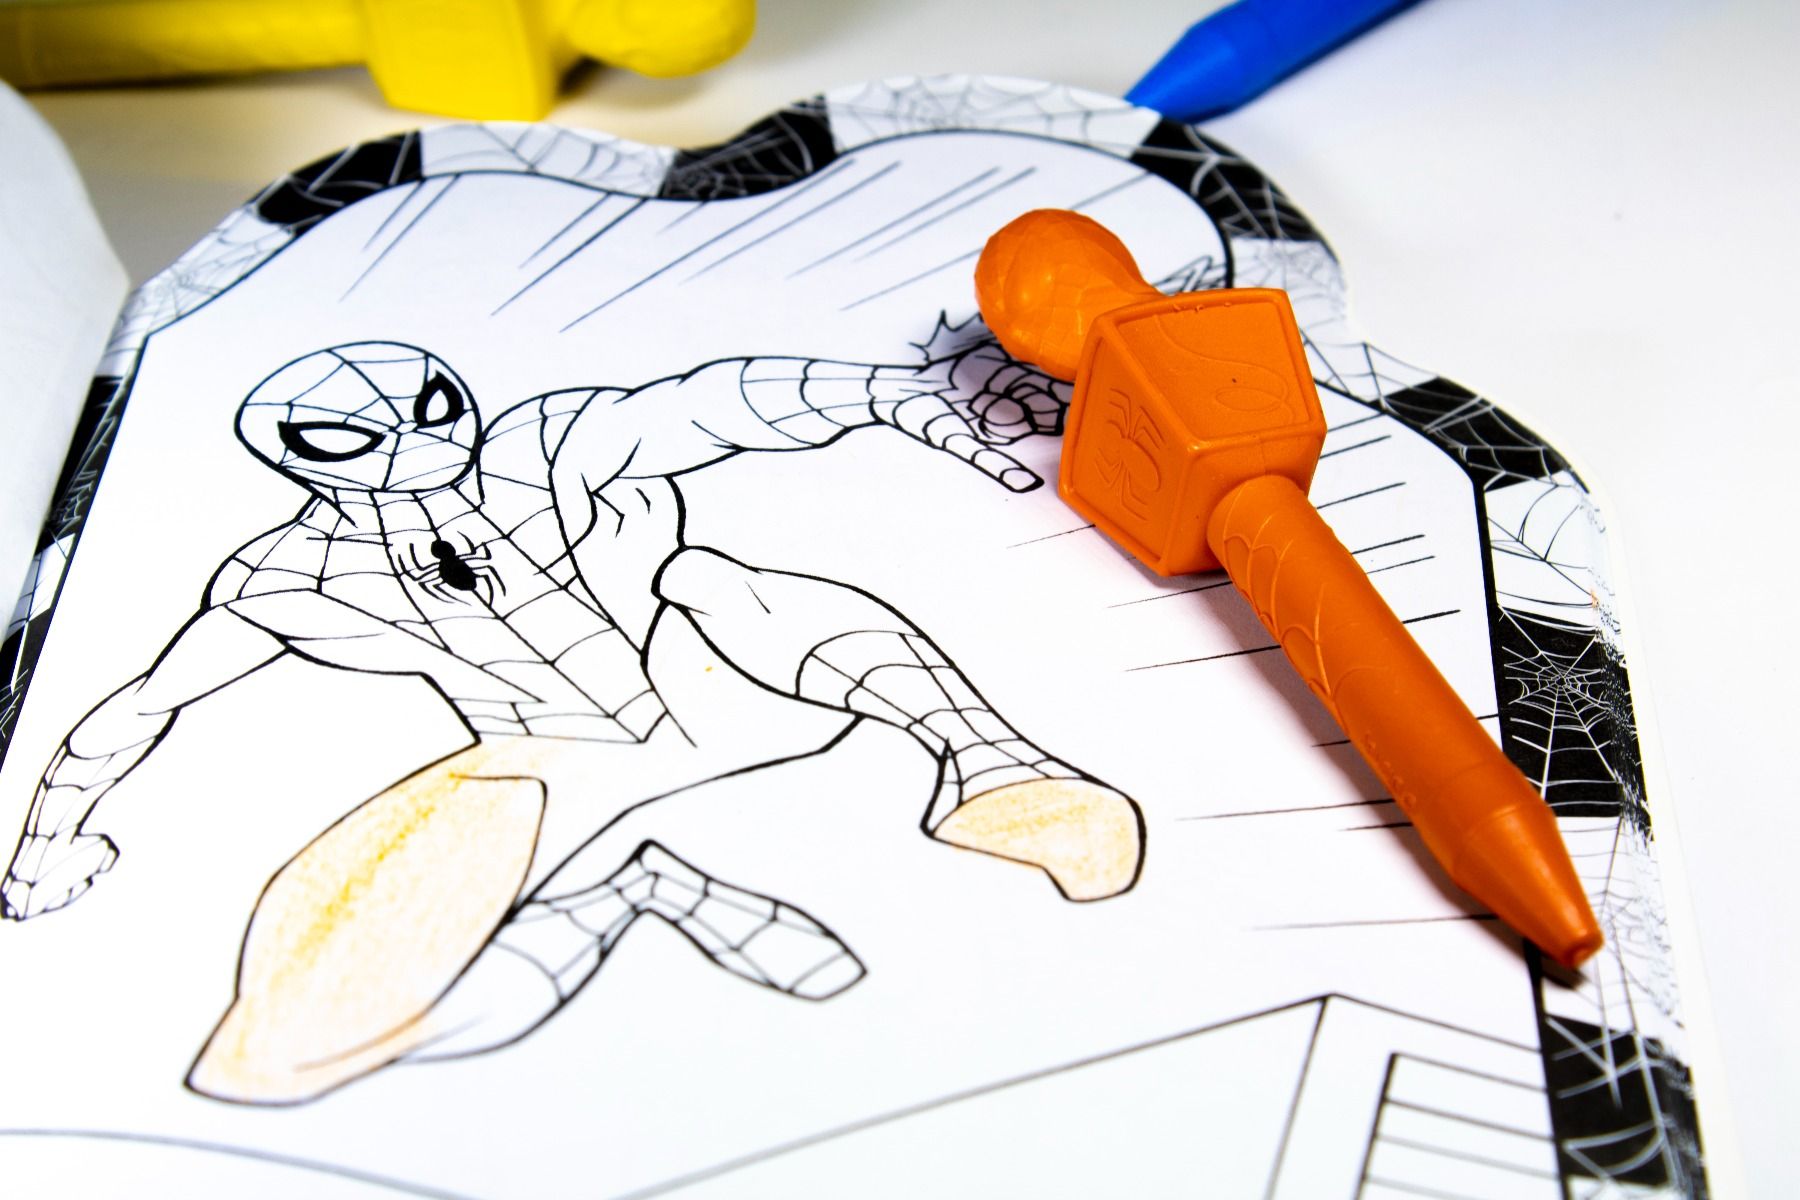 Marvel Spider-Man Art Pad & 3 Spider- Man Sculpted Crayons